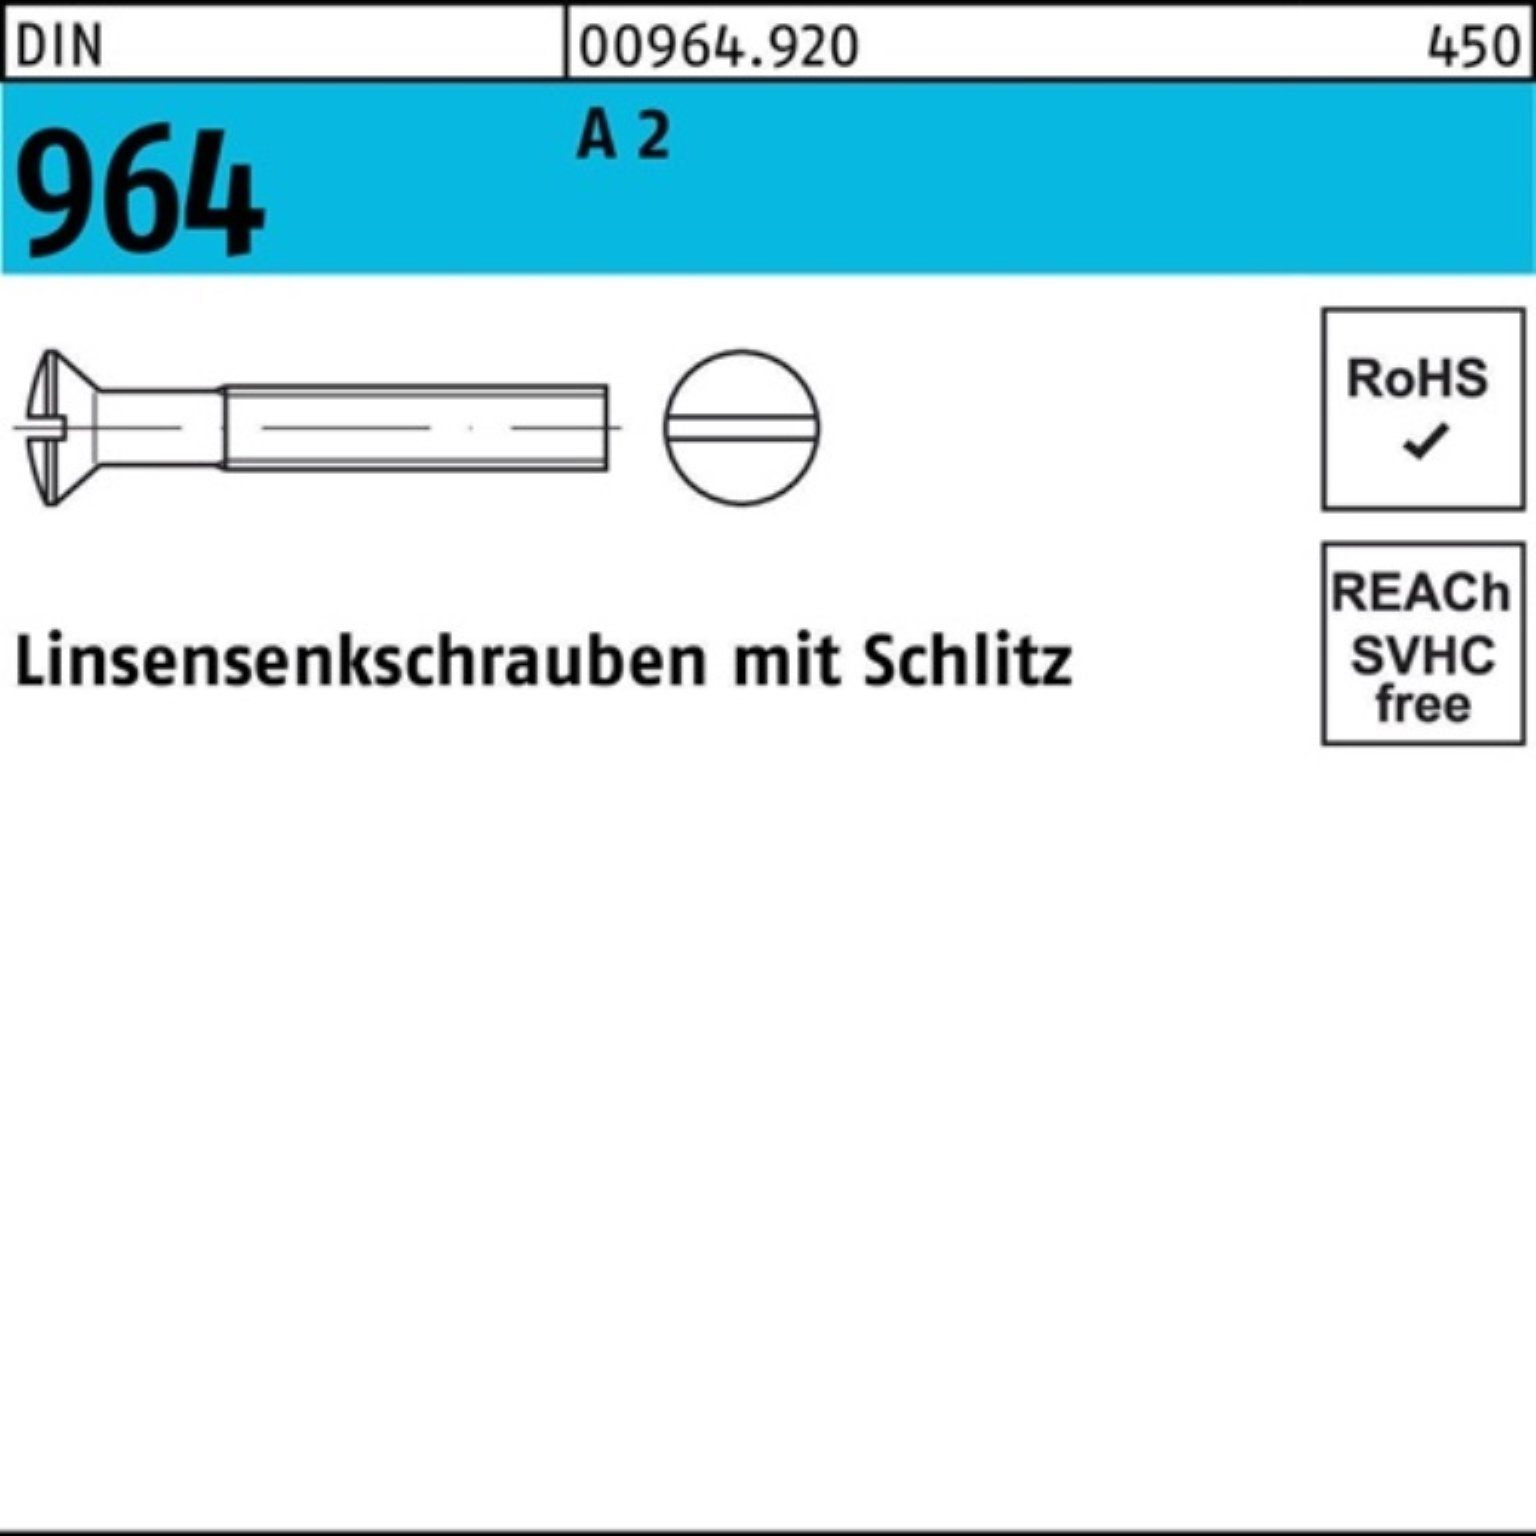 A DI 16 200er 2 200 M6x Linsensenkschraube Reyher Linsenschraube 964 Pack DIN Stück Schlitz